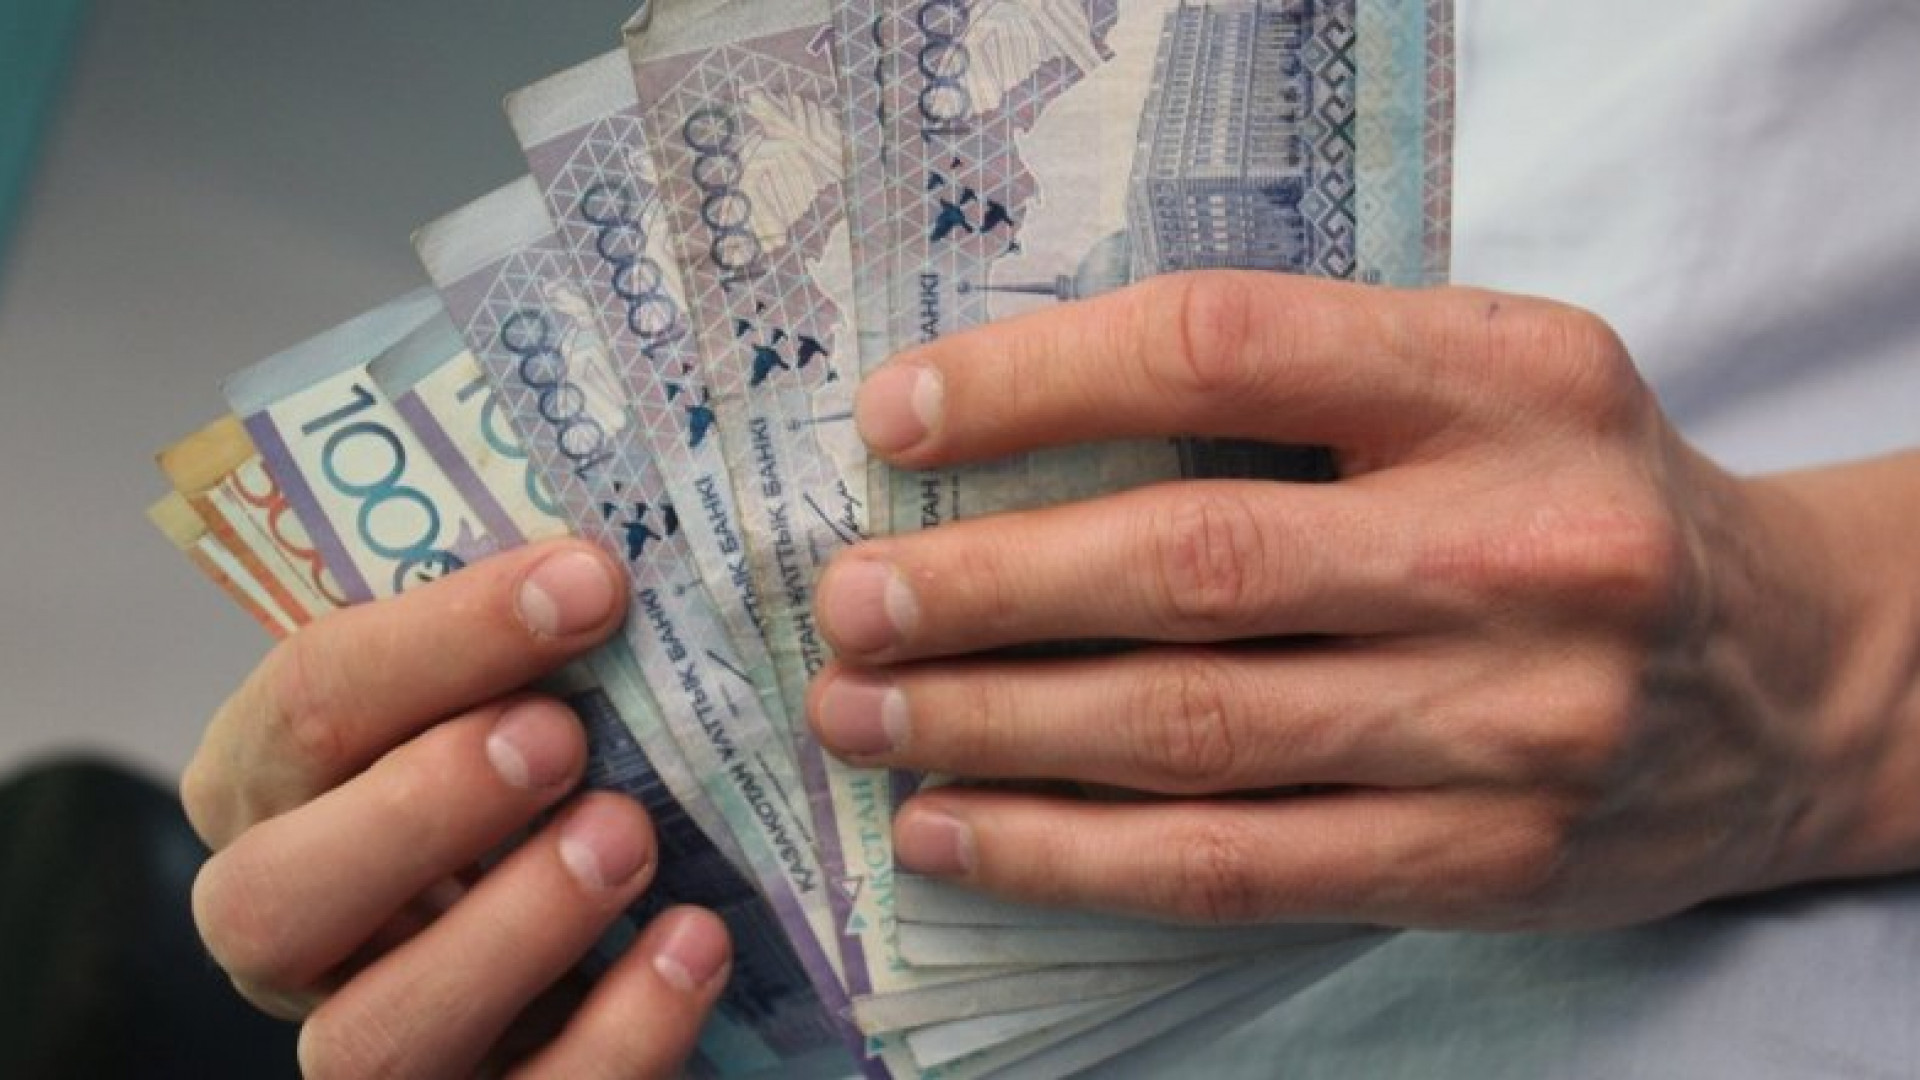 Ақша алу. Деньги Казахстана. Зарплата. Деньги тенге. Деньги Казахстана в руках.